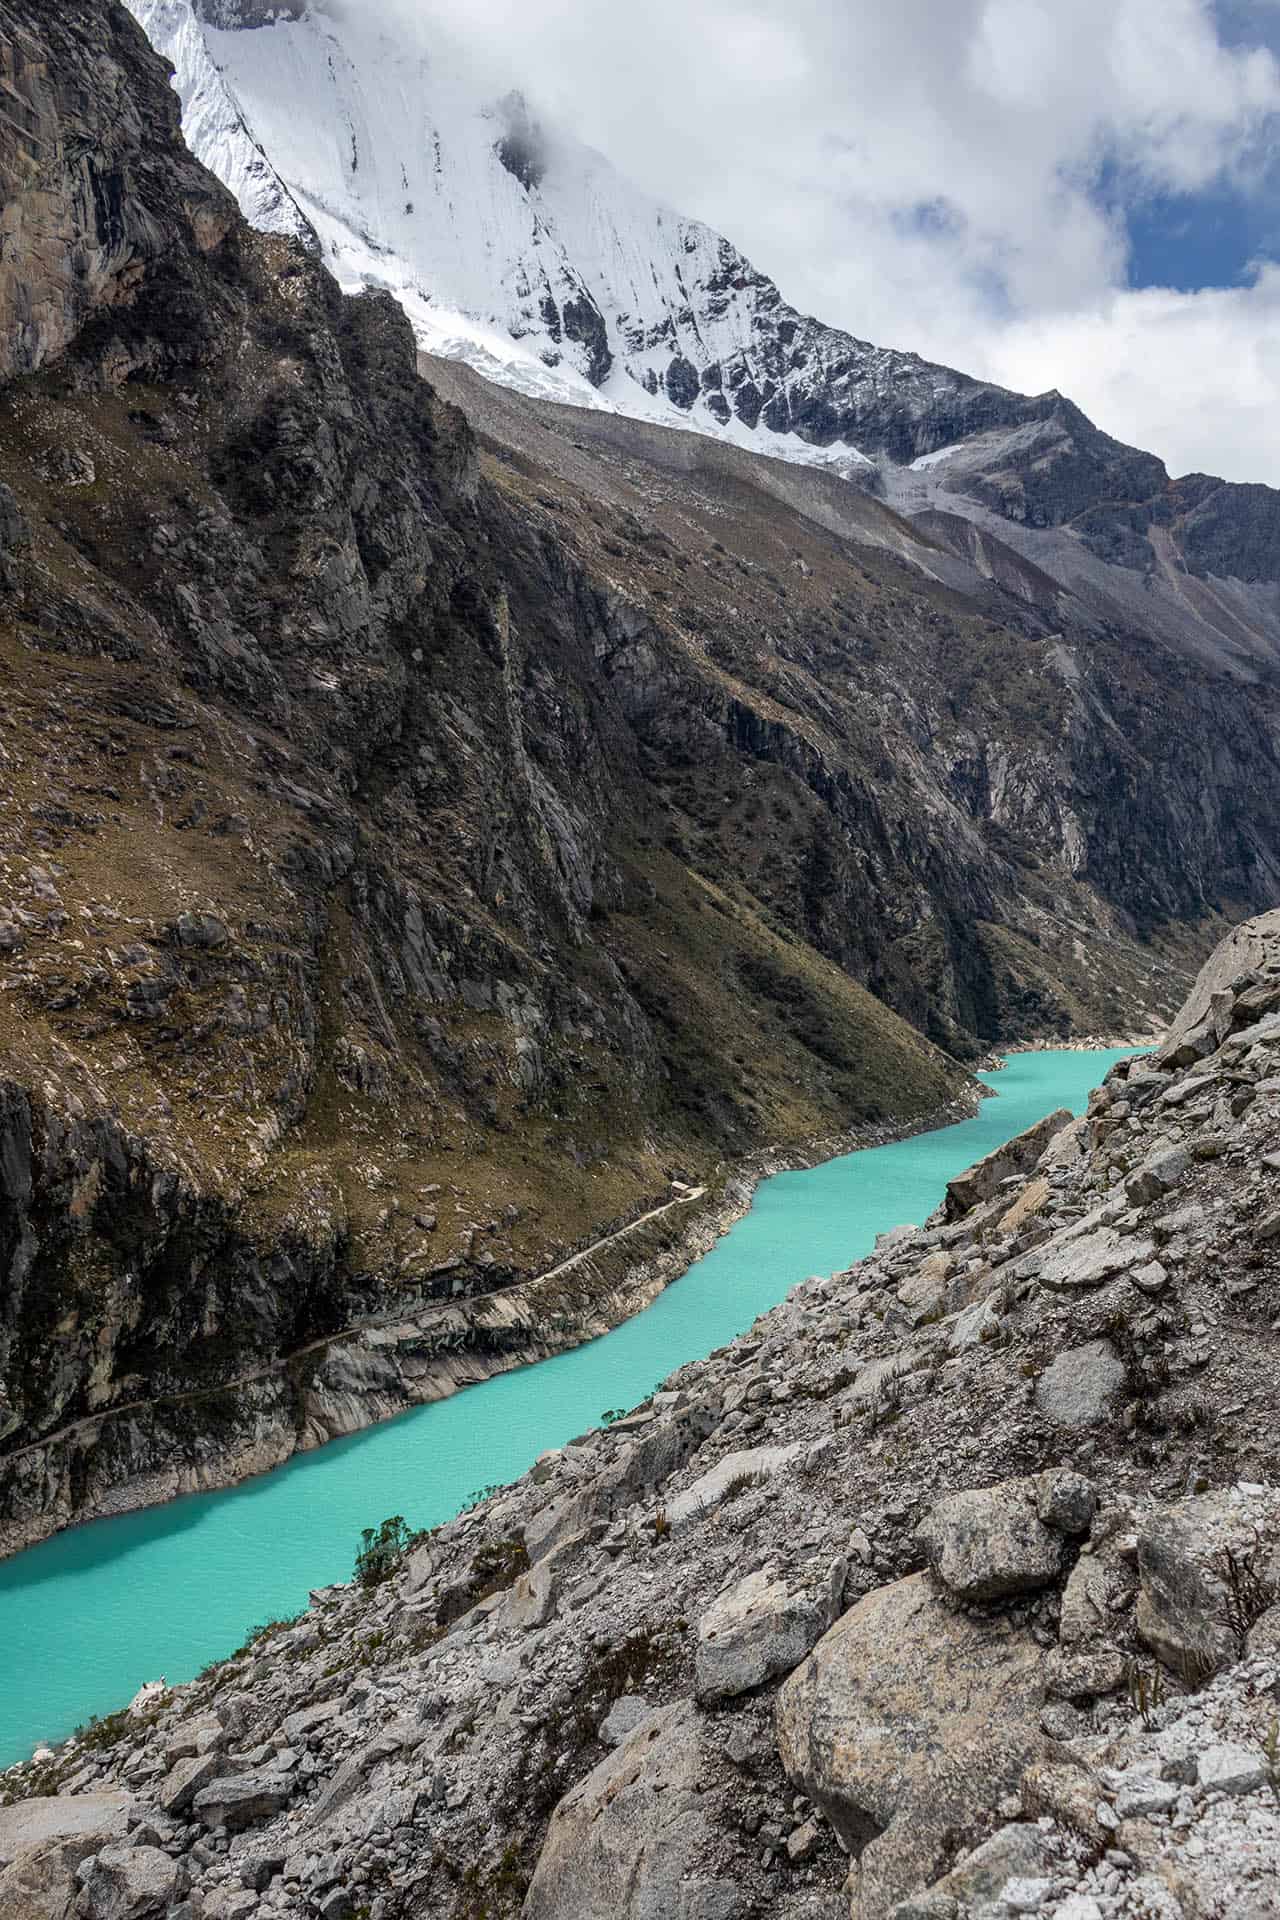 Felblauwe langwerpig meer Laguna Paron in Peru met rotsberg aan de rechterkant en hoge, besneeuwde bergen aan de linkerkant.